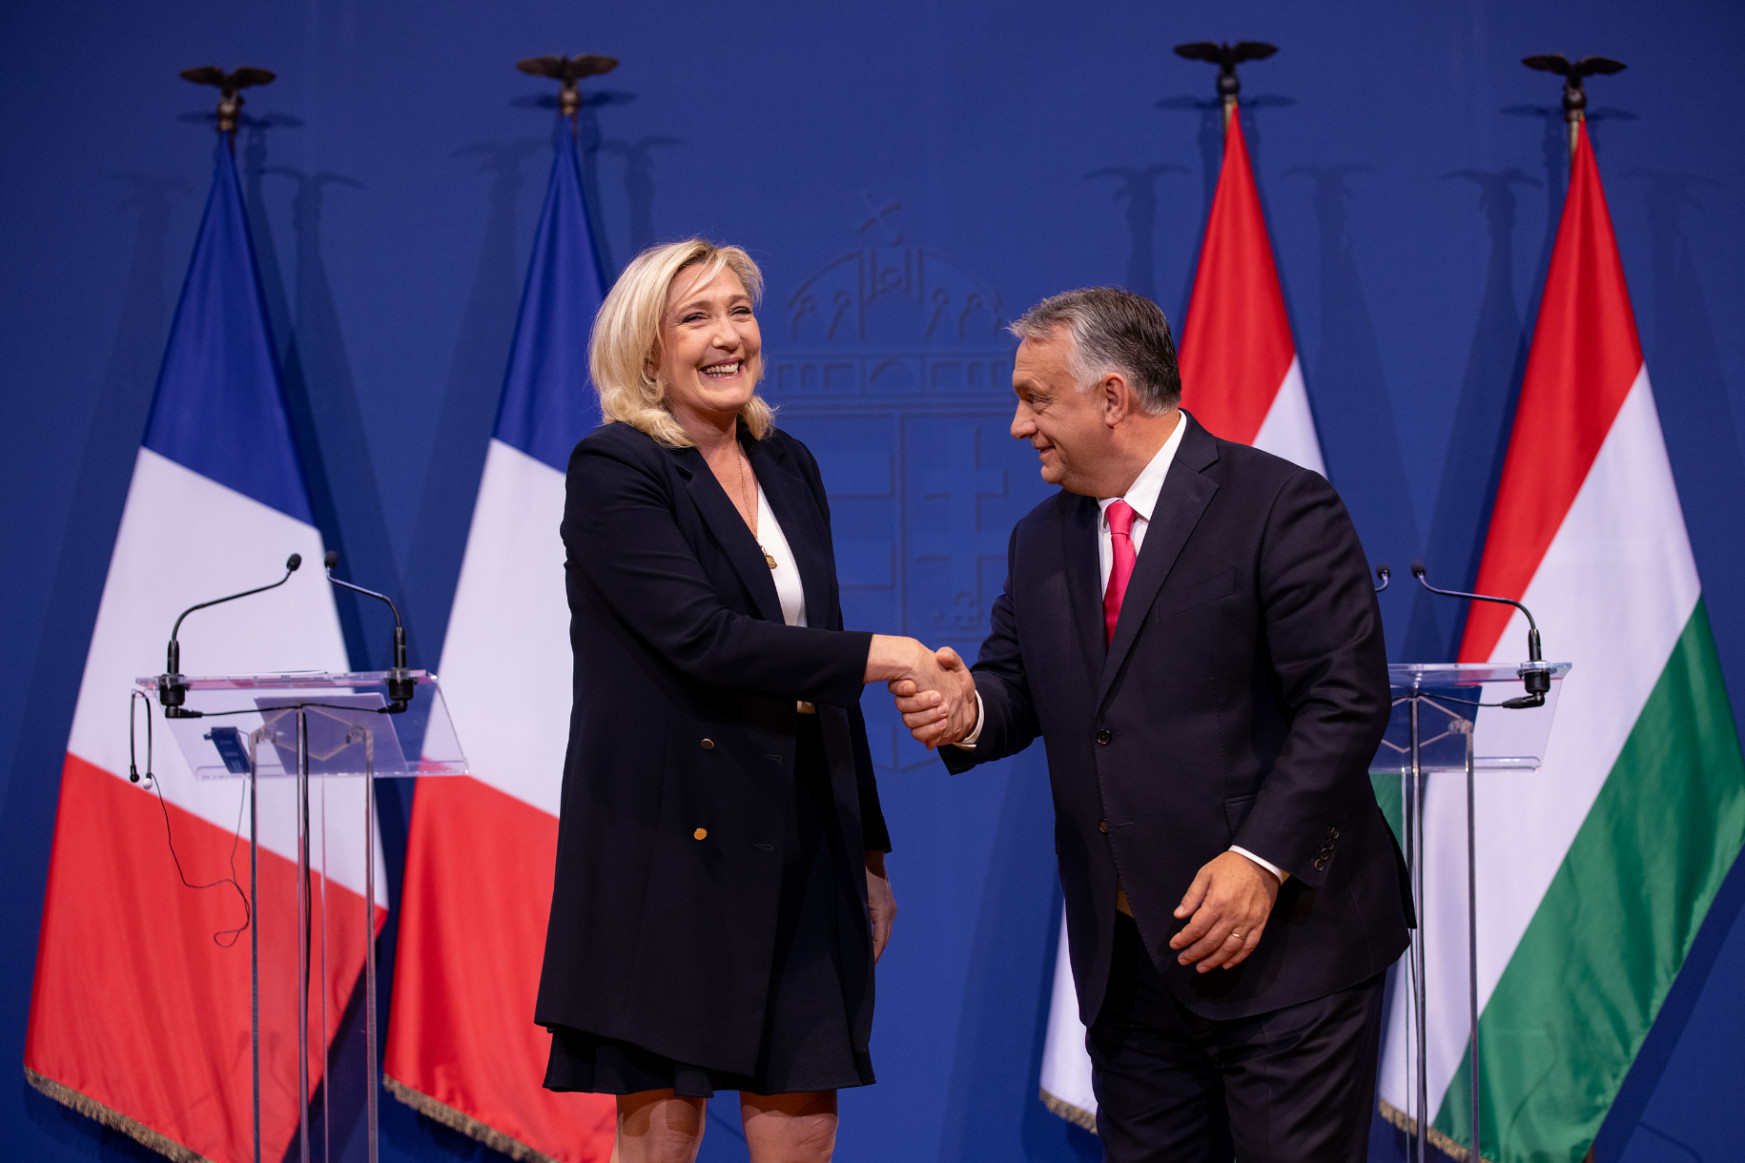 Marine Le Pen hitelezése súlyos kockázatot jelent Magyarországnak, és aligha piaci tranzakció volt